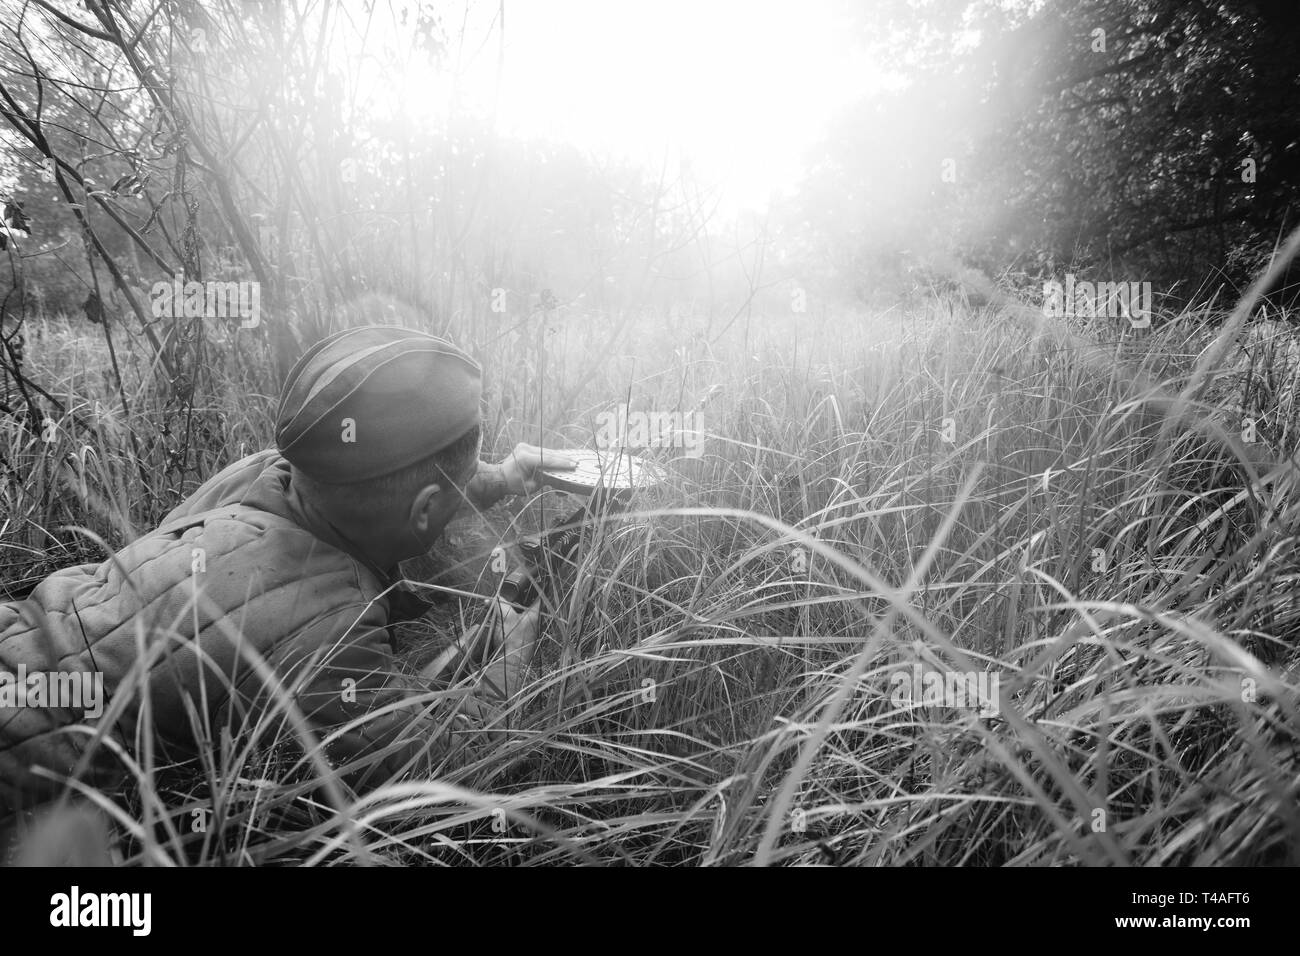 Re-enactor Dressed As World War II Russian Soviet Red Army Soldier Reload Machine Gun in Forest Grass During Battle. Degtyaryov DP Machine Gun. WWII W Stock Photo